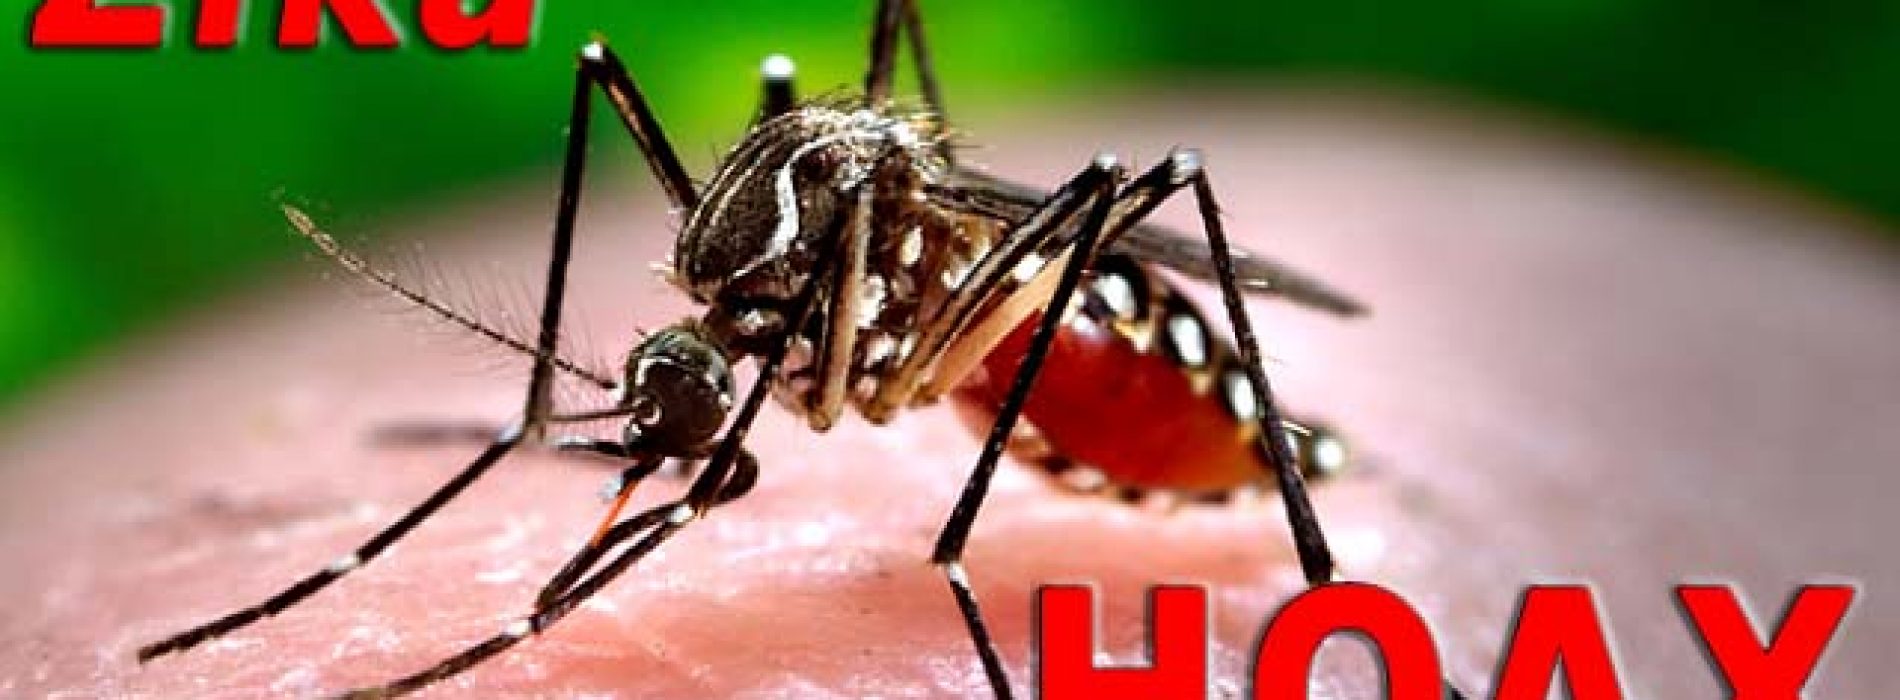 Chili: eerste geval van besmetting met zikavirus via seksueel contact